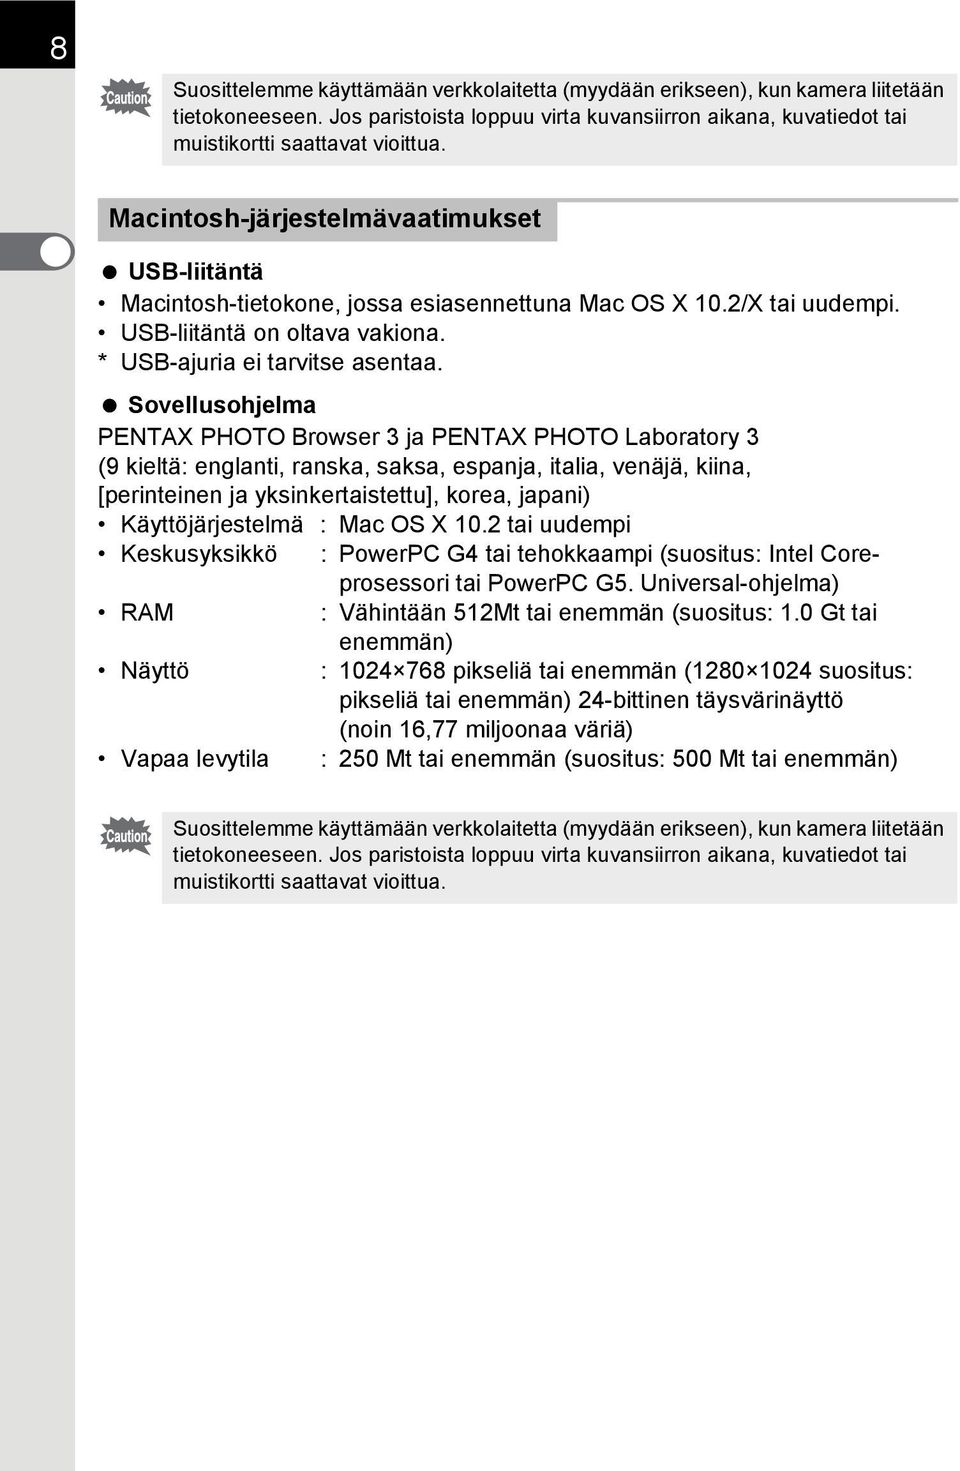 Sovellusohjelma PENTAX PHOTO Browser 3 ja PENTAX PHOTO Laboratory 3 (9 kieltä: englanti, ranska, saksa, espanja, italia, venäjä, kiina, [perinteinen ja yksinkertaistettu], korea, japani)